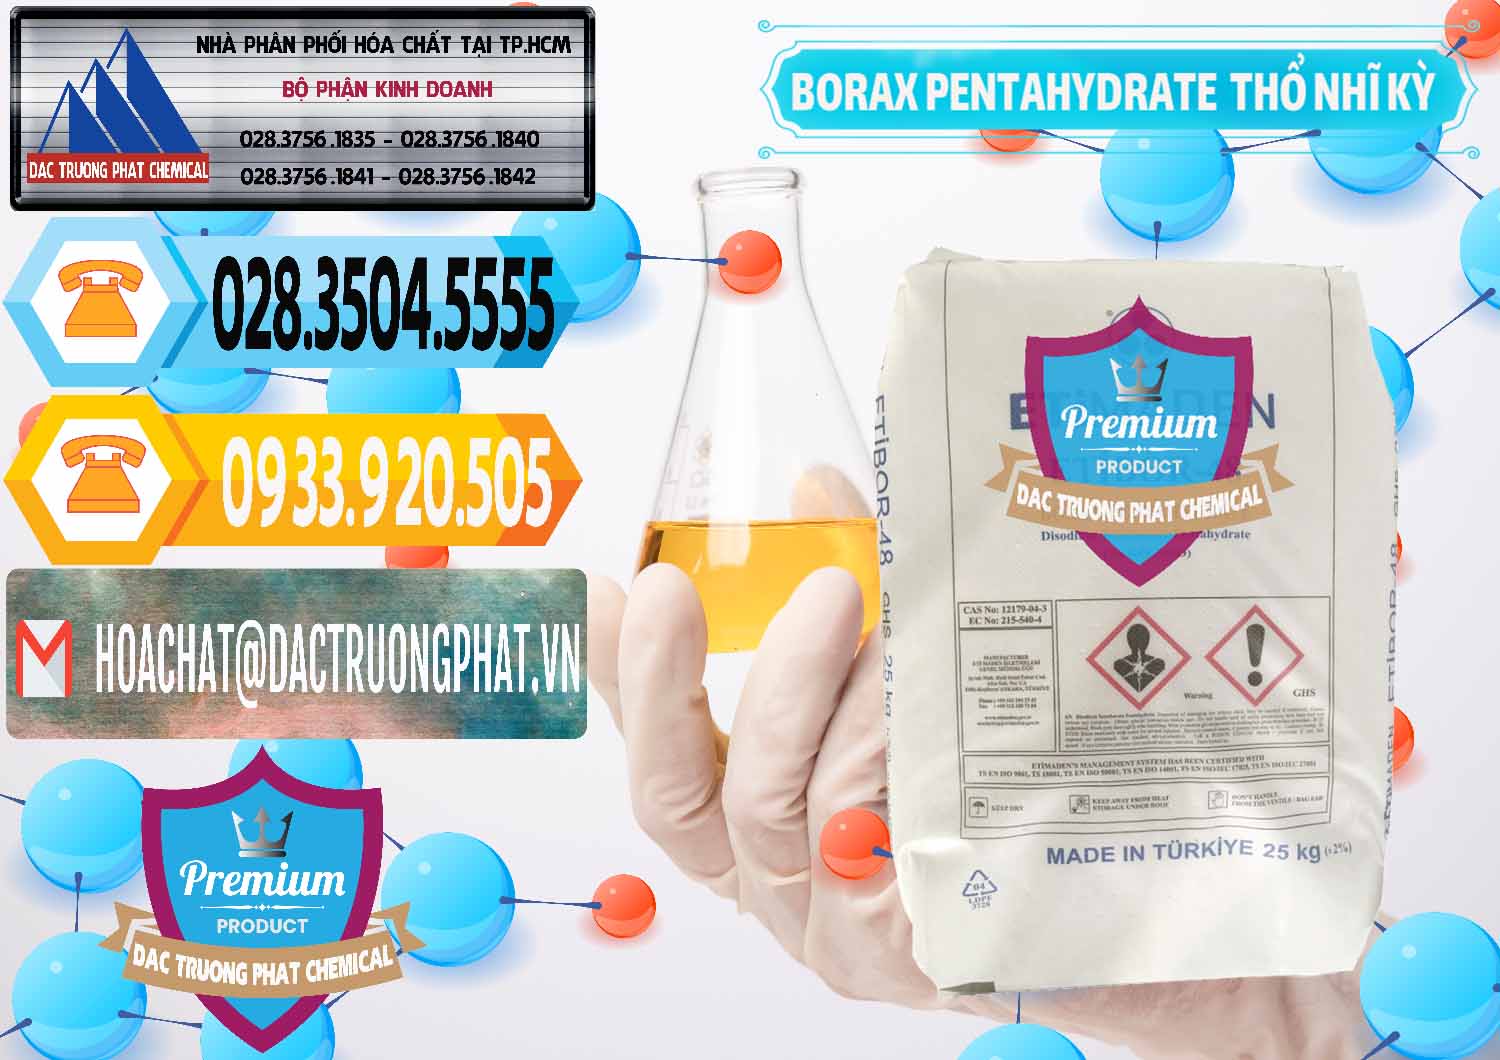 Đơn vị chuyên cung ứng ( bán ) Borax Pentahydrate Thổ Nhĩ Kỳ Turkey - 0431 - Kinh doanh ( cung cấp ) hóa chất tại TP.HCM - hoachattayrua.net